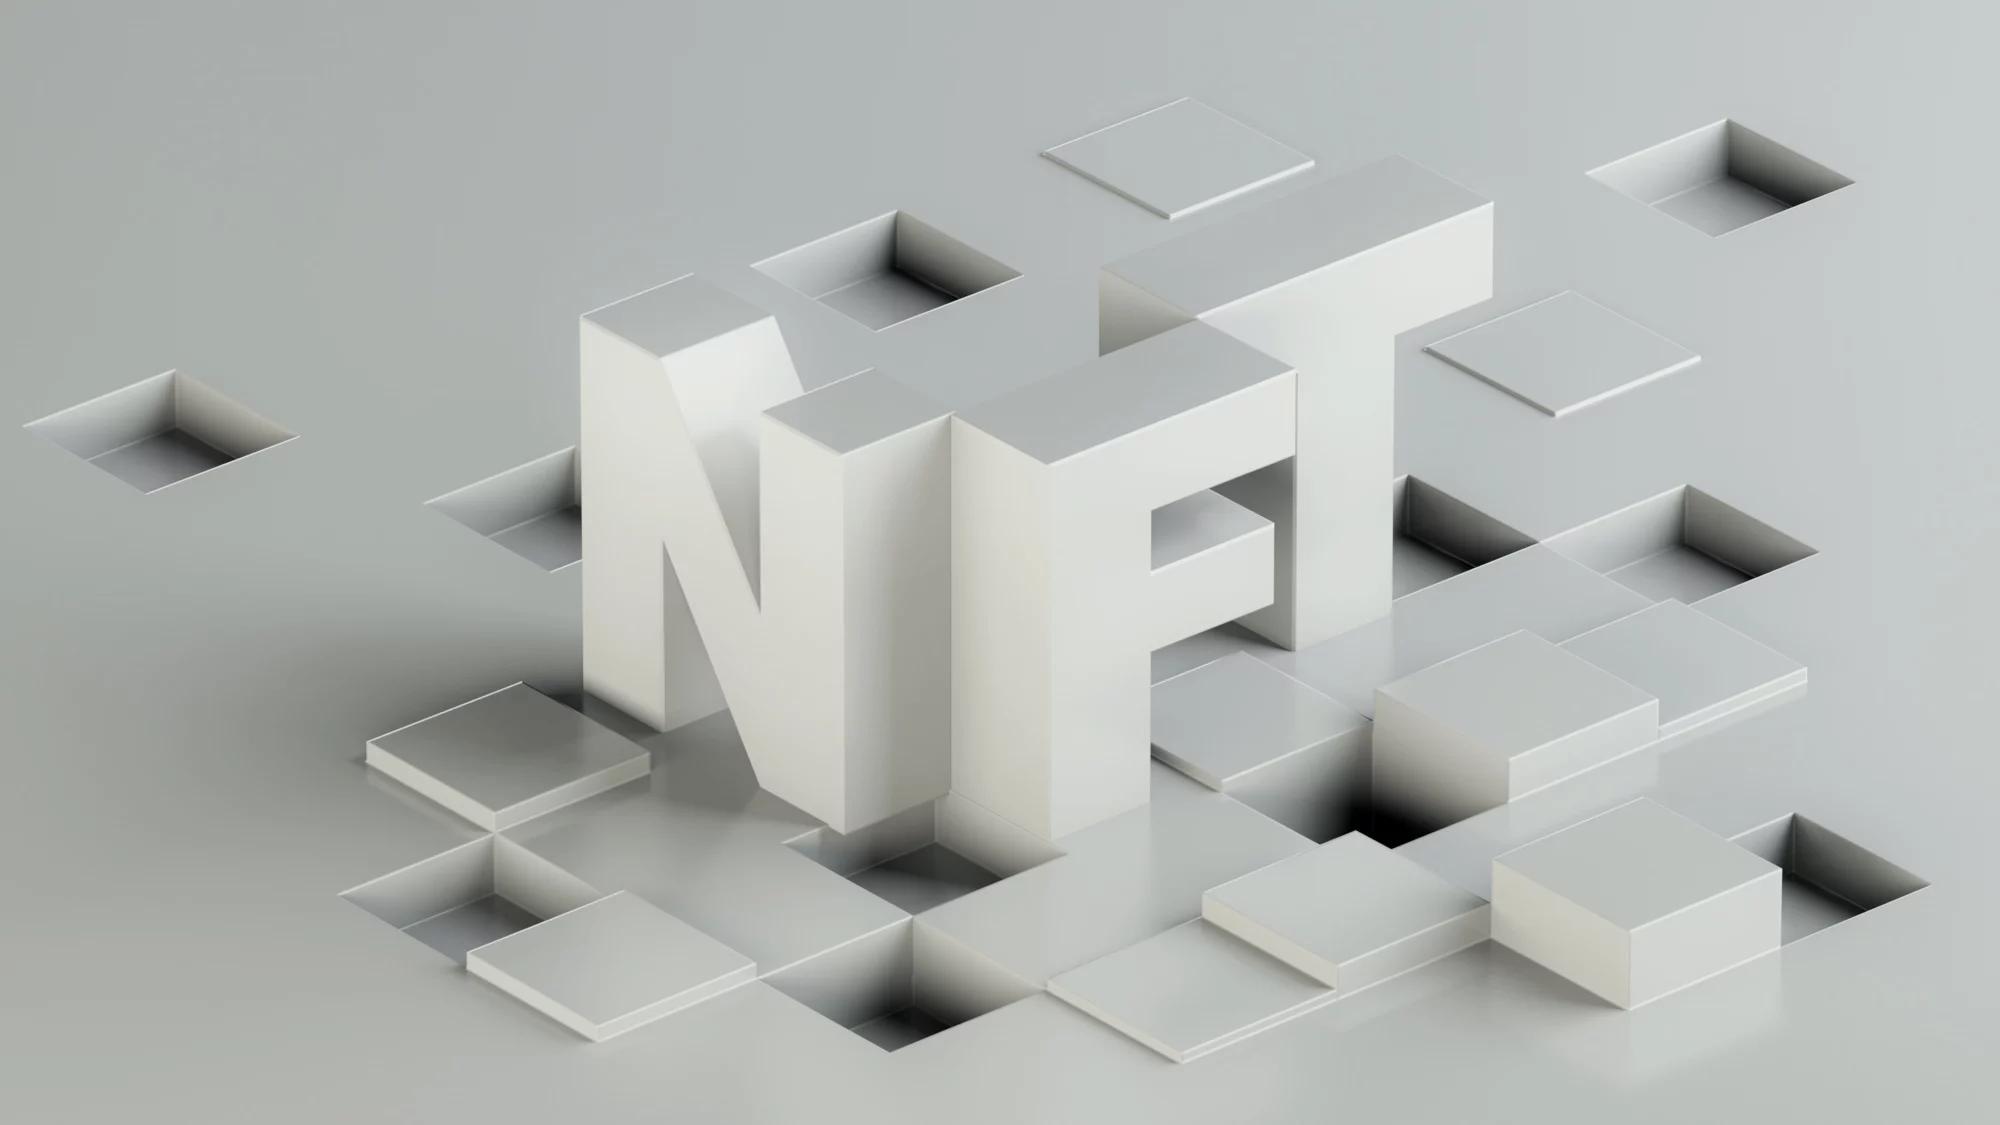 3D model of white NFT text